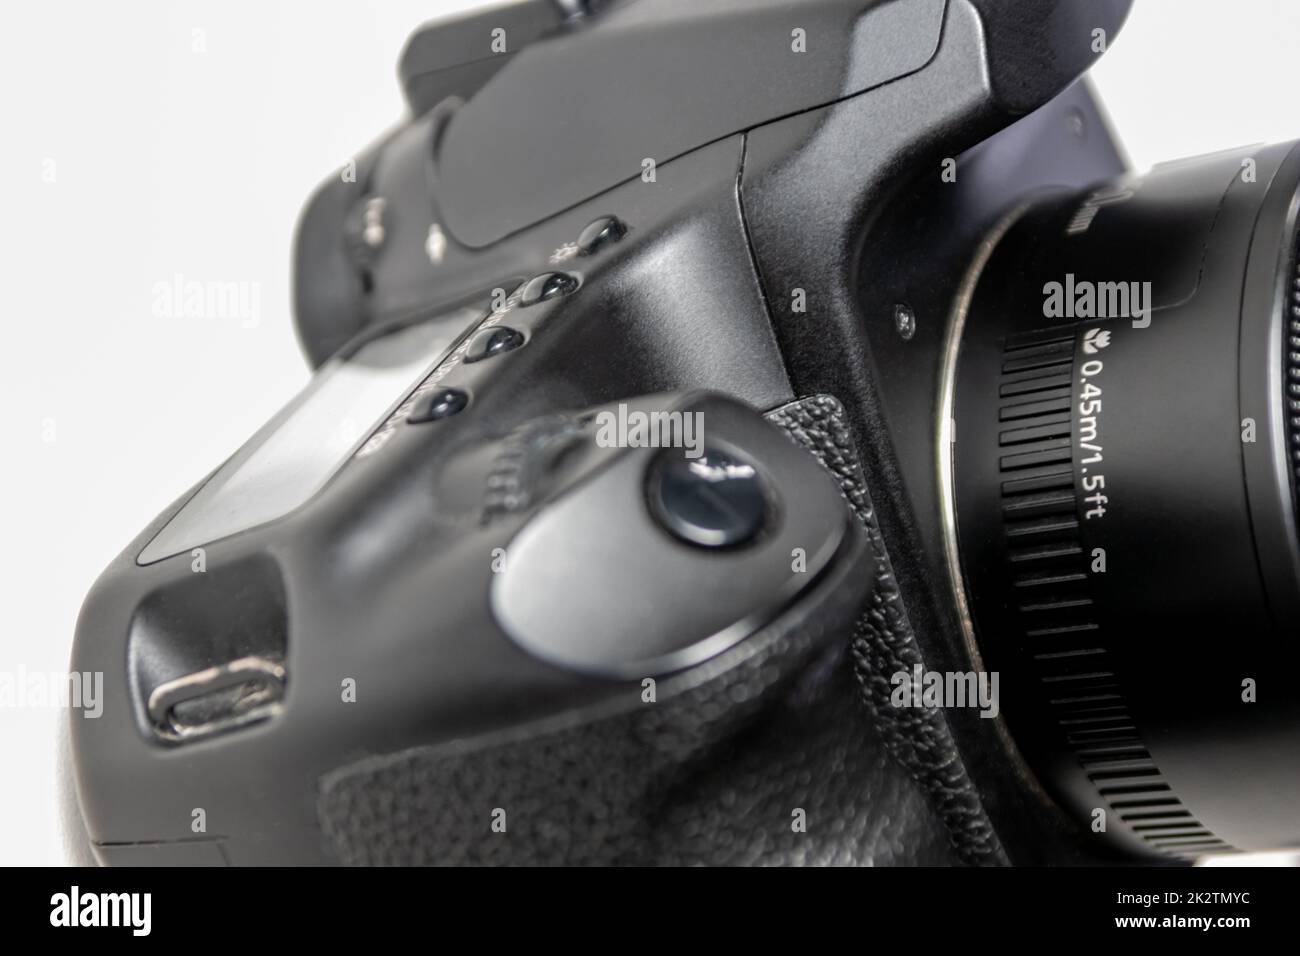 Professionelle dslr-Kameraausrüstung mit 50-mm-objektiv mit F1,8-mm-Objektiv in Makro-Nahaufnahme zeigt Details der Fotoausrüstung für Studioaufnahmen und Porträtaufnahmen mit dslr an Stockfoto